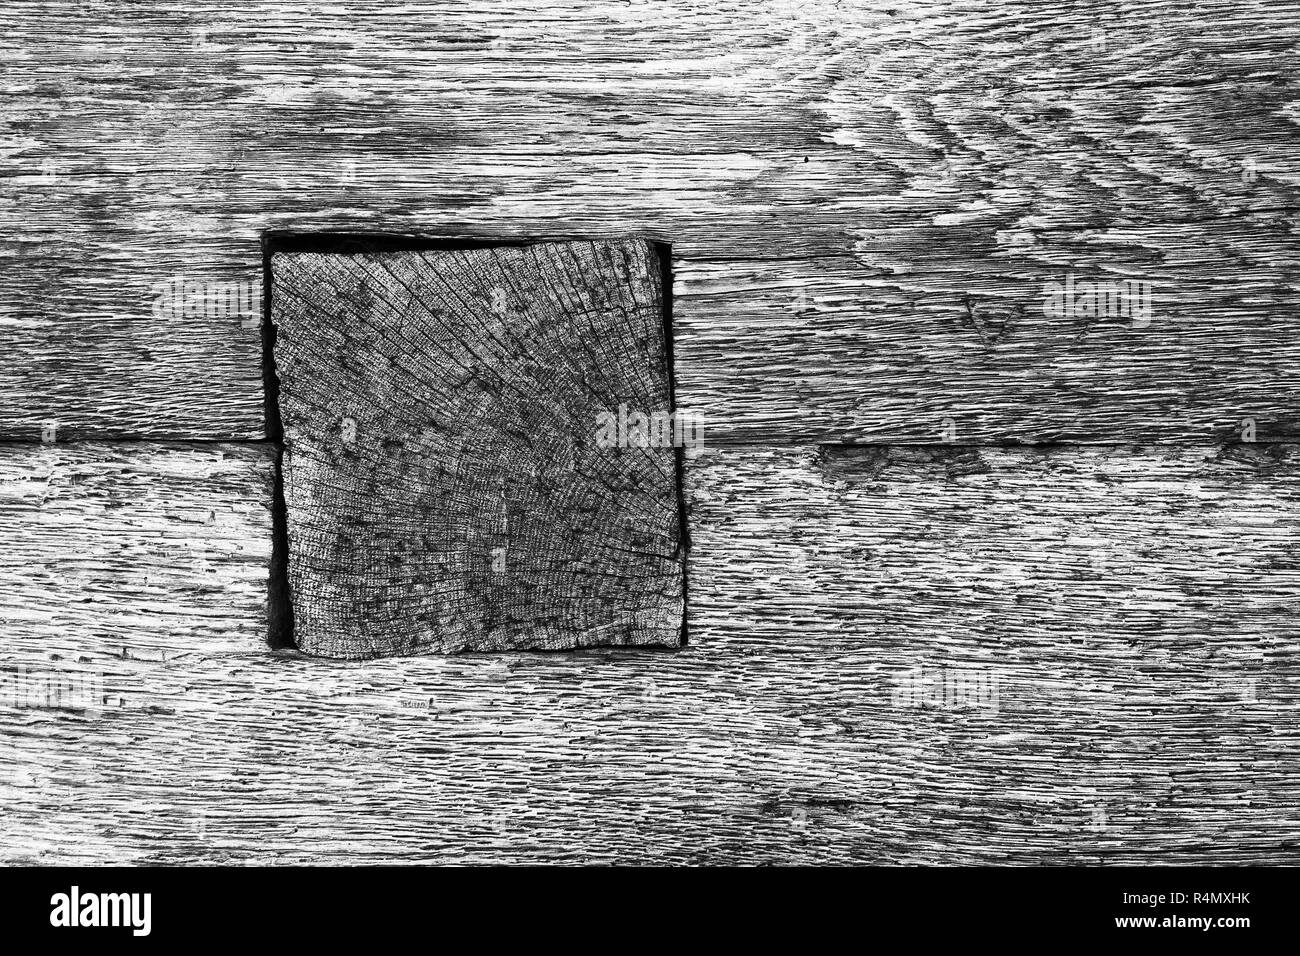 Detalle de la viga de madera abatible en old log house, en blanco y negro de la imagen de textura Foto de stock